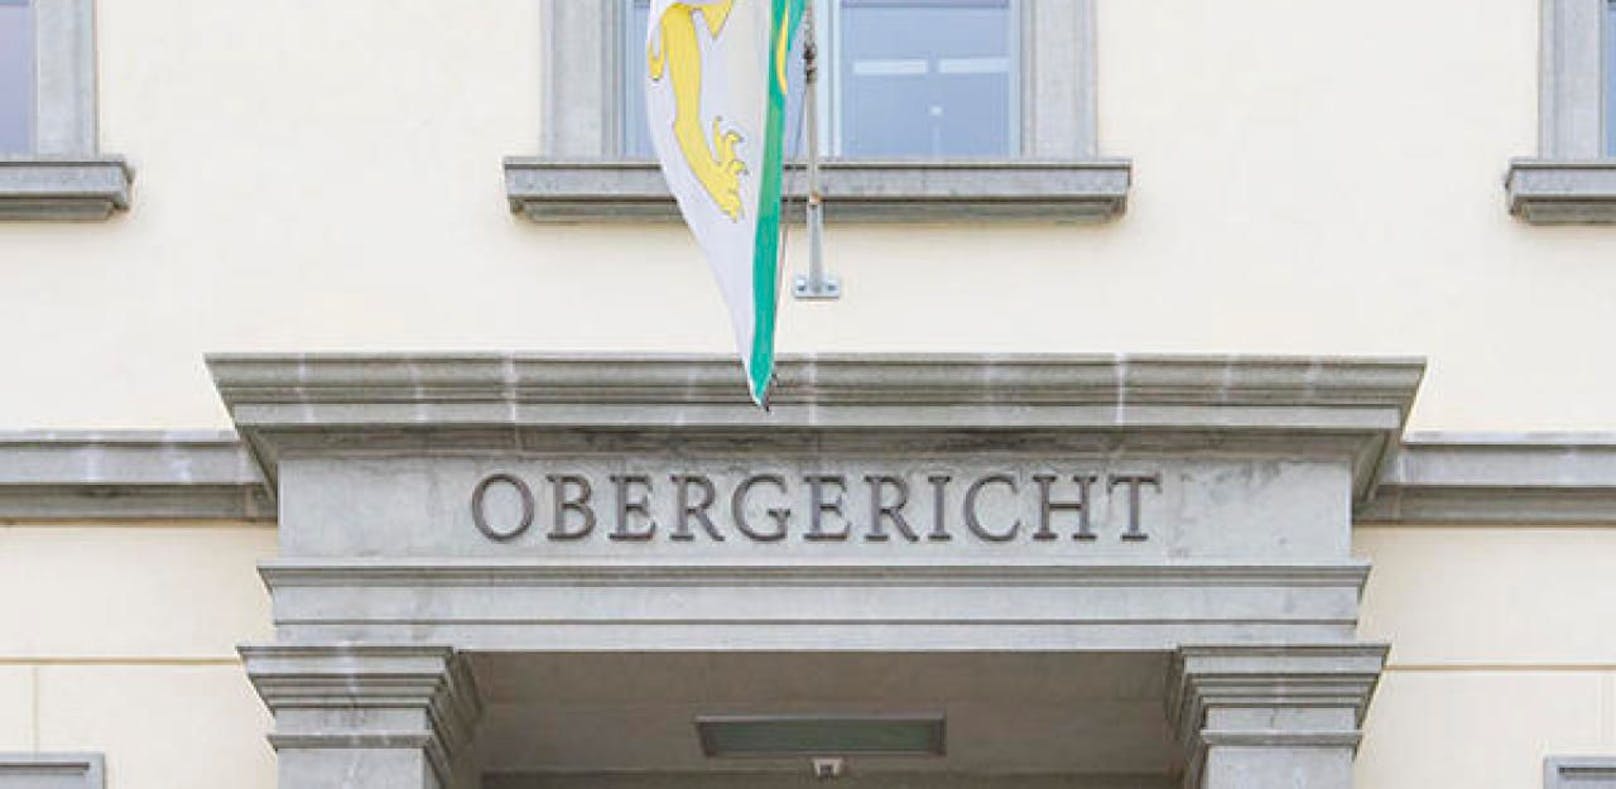 Der Fall kam bereits 2016 vor das Thurgauer Obergericht. Es bestätigte das Urteil der Vorinstanz.